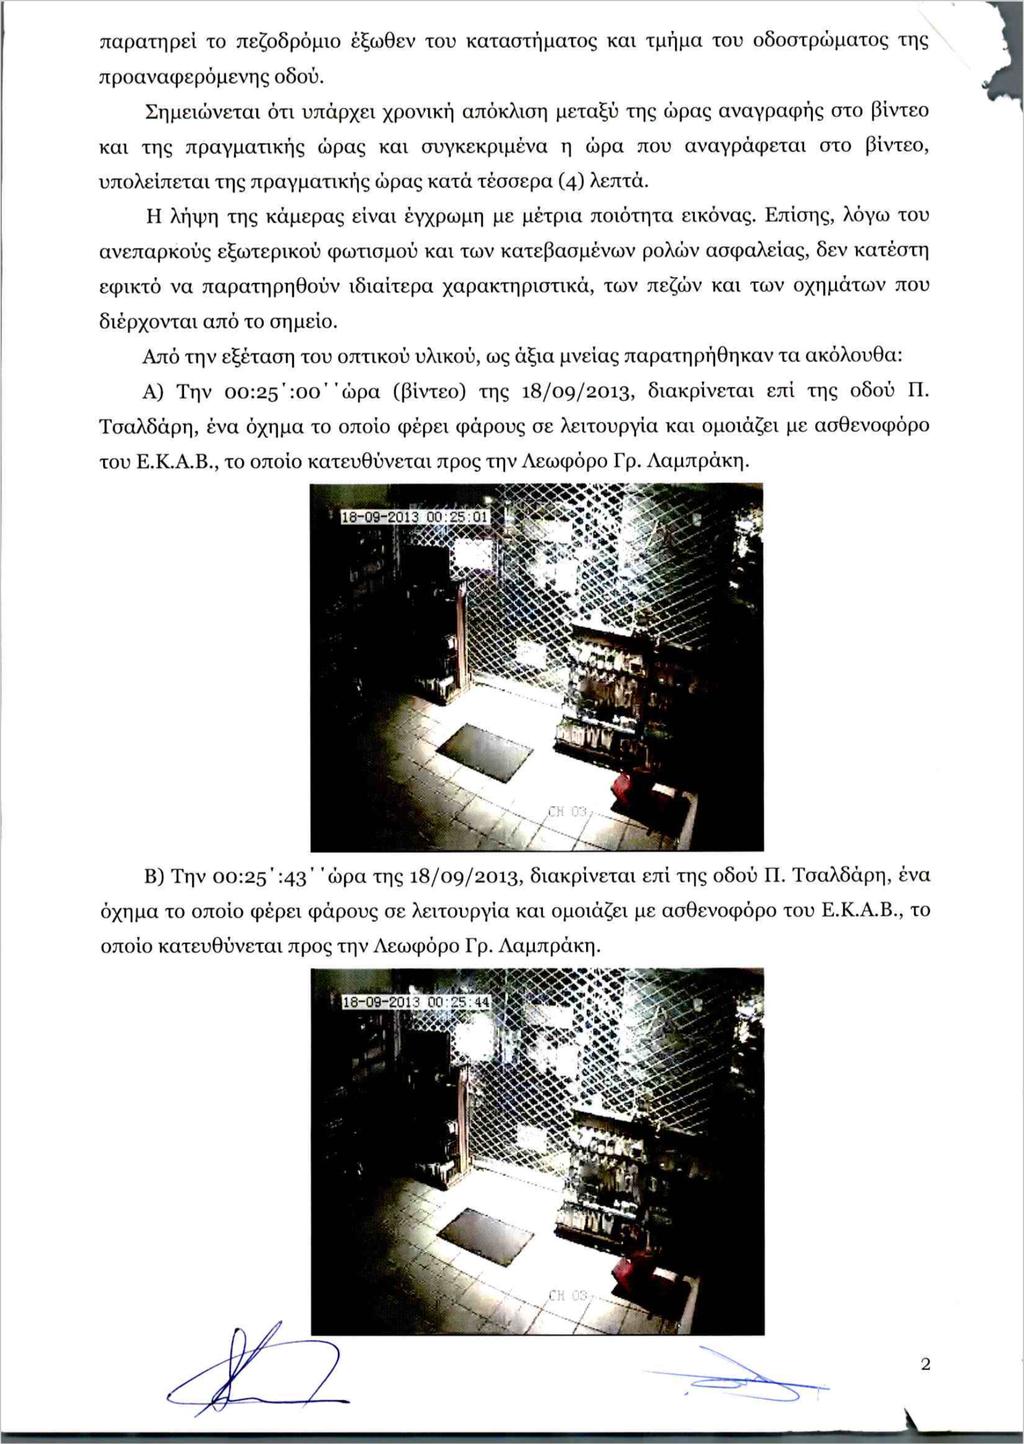 Απόσπασμα από την Έκθεση Εξέτασης Οπτικής Παρατήρησης Βιντεοληπτικού Υλικού της Αντιτρομοκρατικής Υπηρεσίας της Αστυνομίας, που εξετάζει